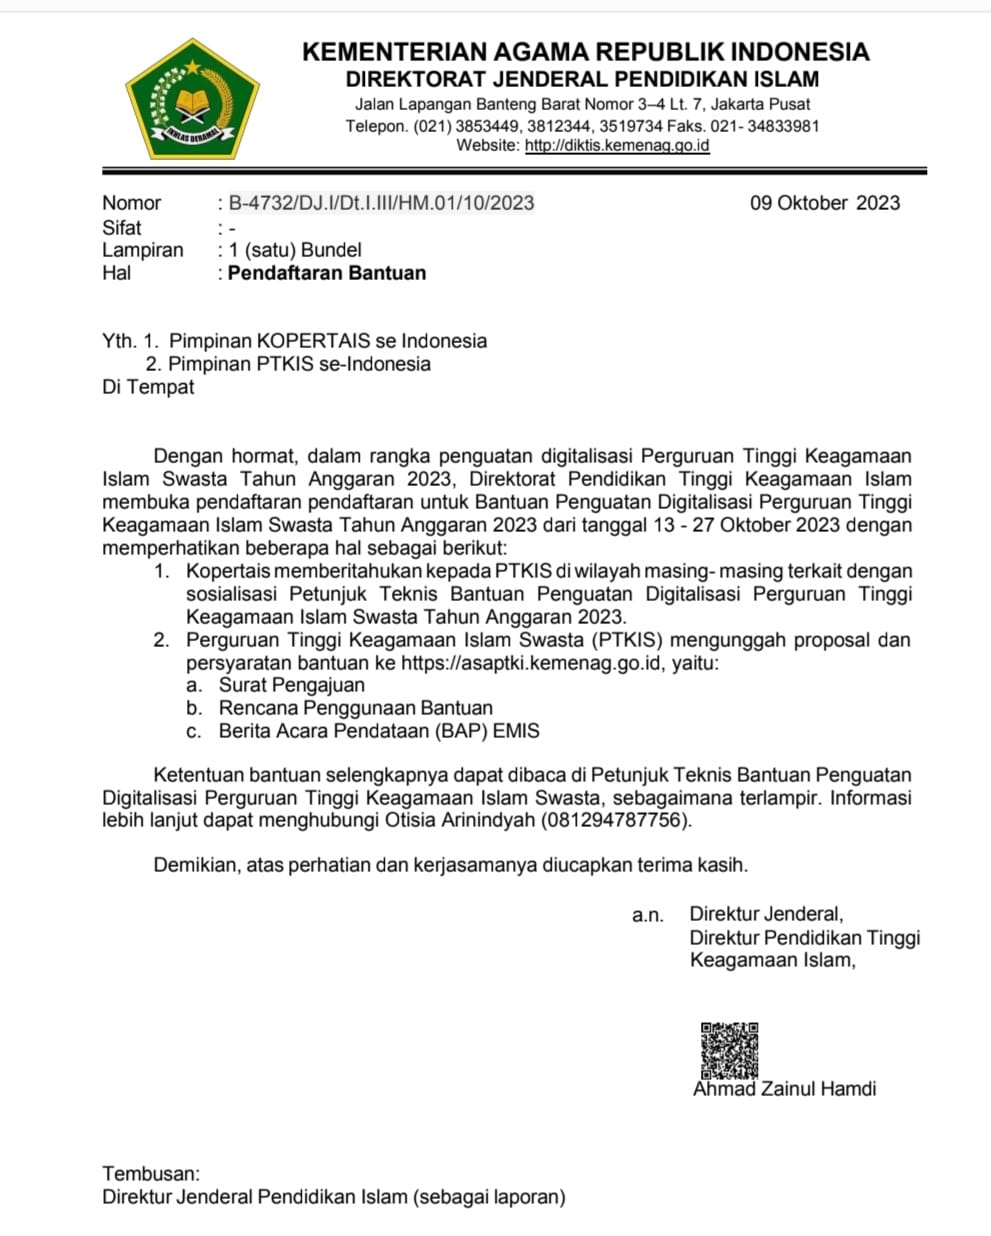 Pendaftaran untuk Bantuan Penguatan Digitalisasi Perguruan Tinggi Keagamaan Islam Swasta...